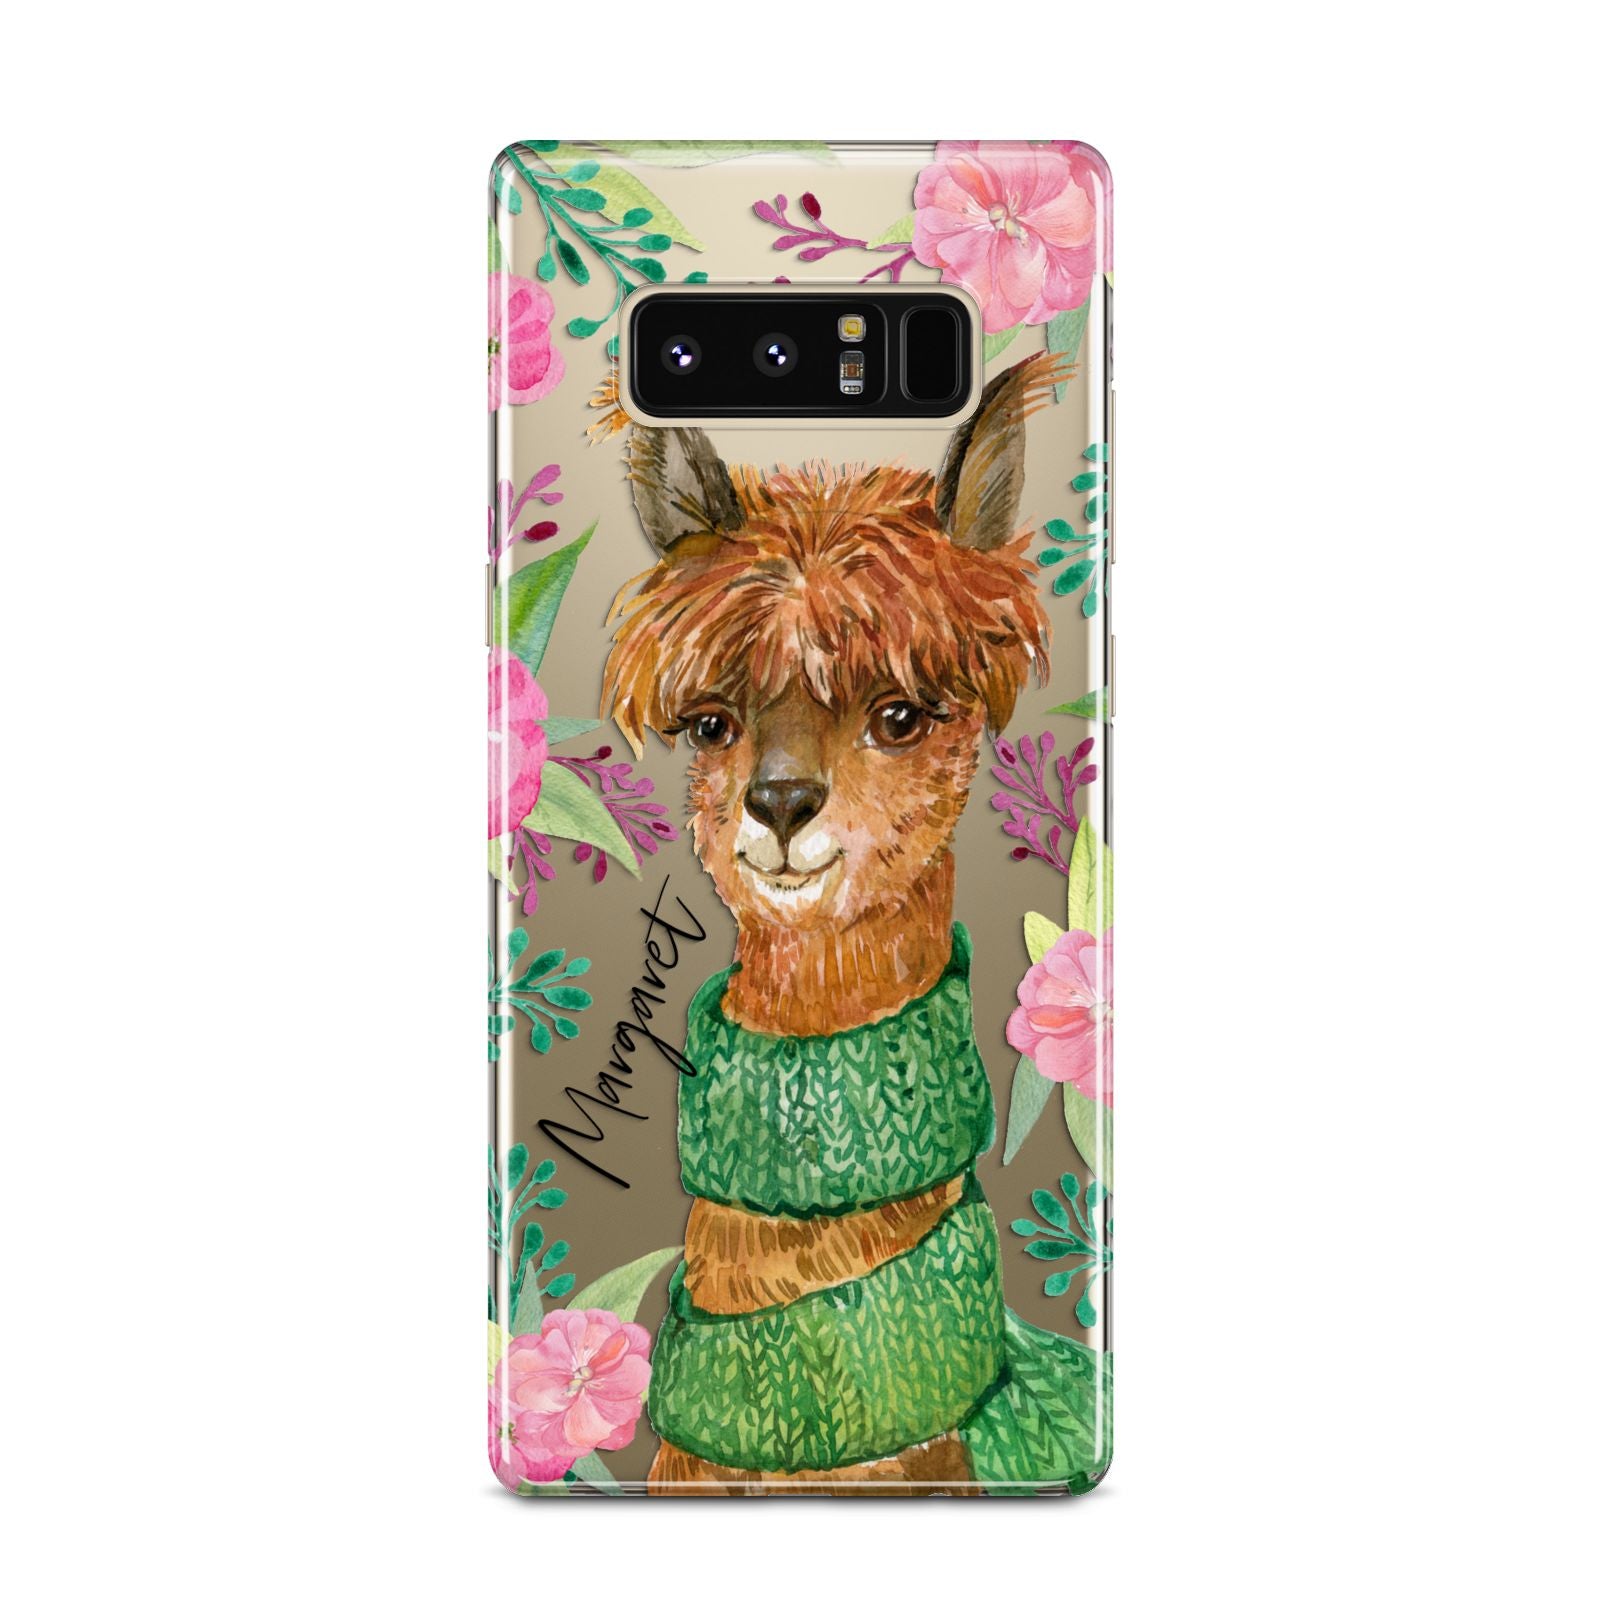 Personalised Alpaca Samsung Galaxy Note 8 Case